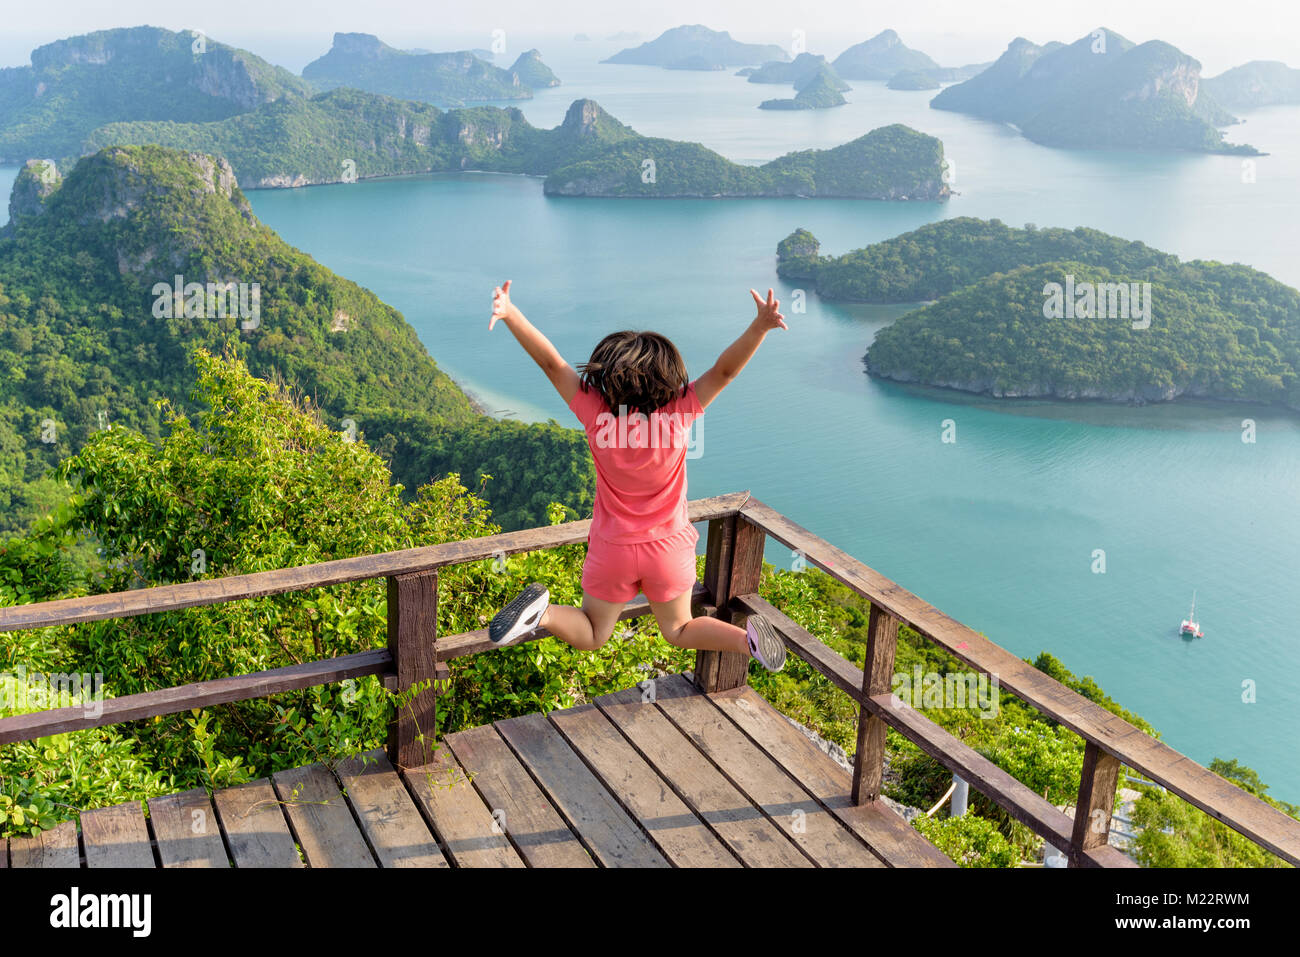 Frau touristische Springen mit glücklich, es den Peak Mountain der herrlichen Naturlandschaft des Meer aus Sicht von Ko Wua Ta Lap Insel zu sehen erreicht hat. Stockfoto